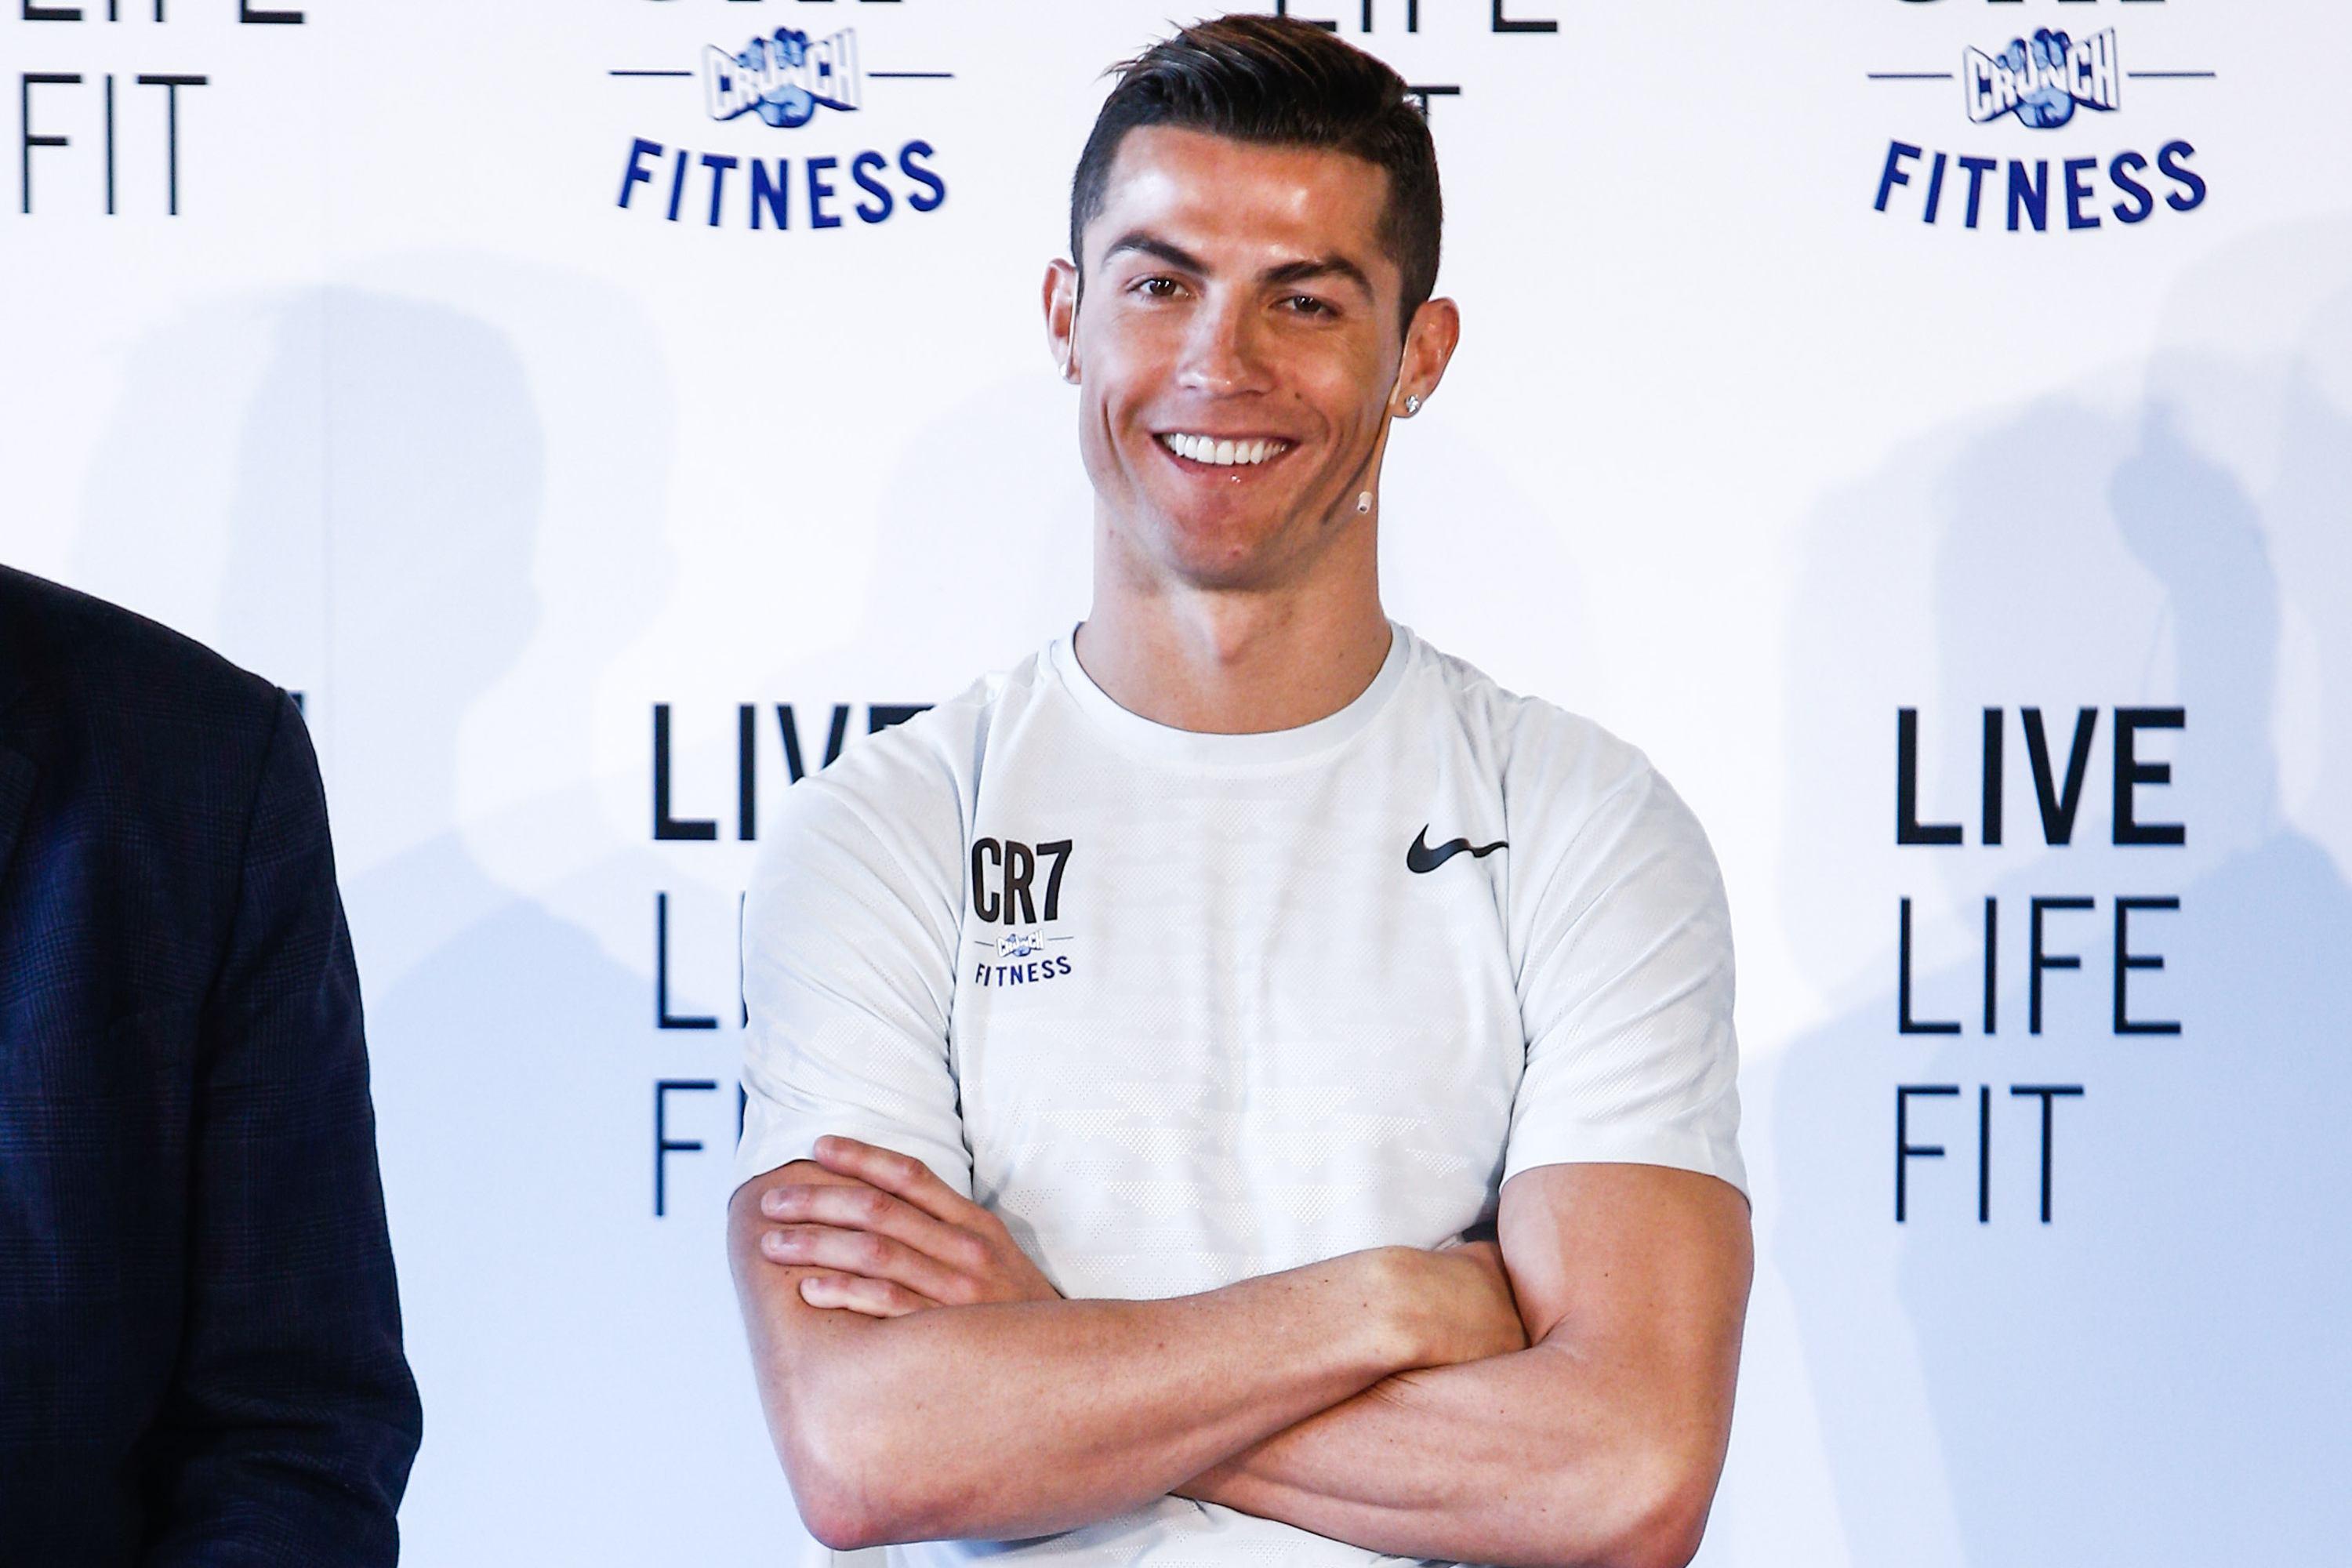 Cristiano Ronaldo, nume de aeroport. Fotbalistul a rămas fără cuvinte: "N-am cerut acest favor, dar nici nu sunt ipocrit"